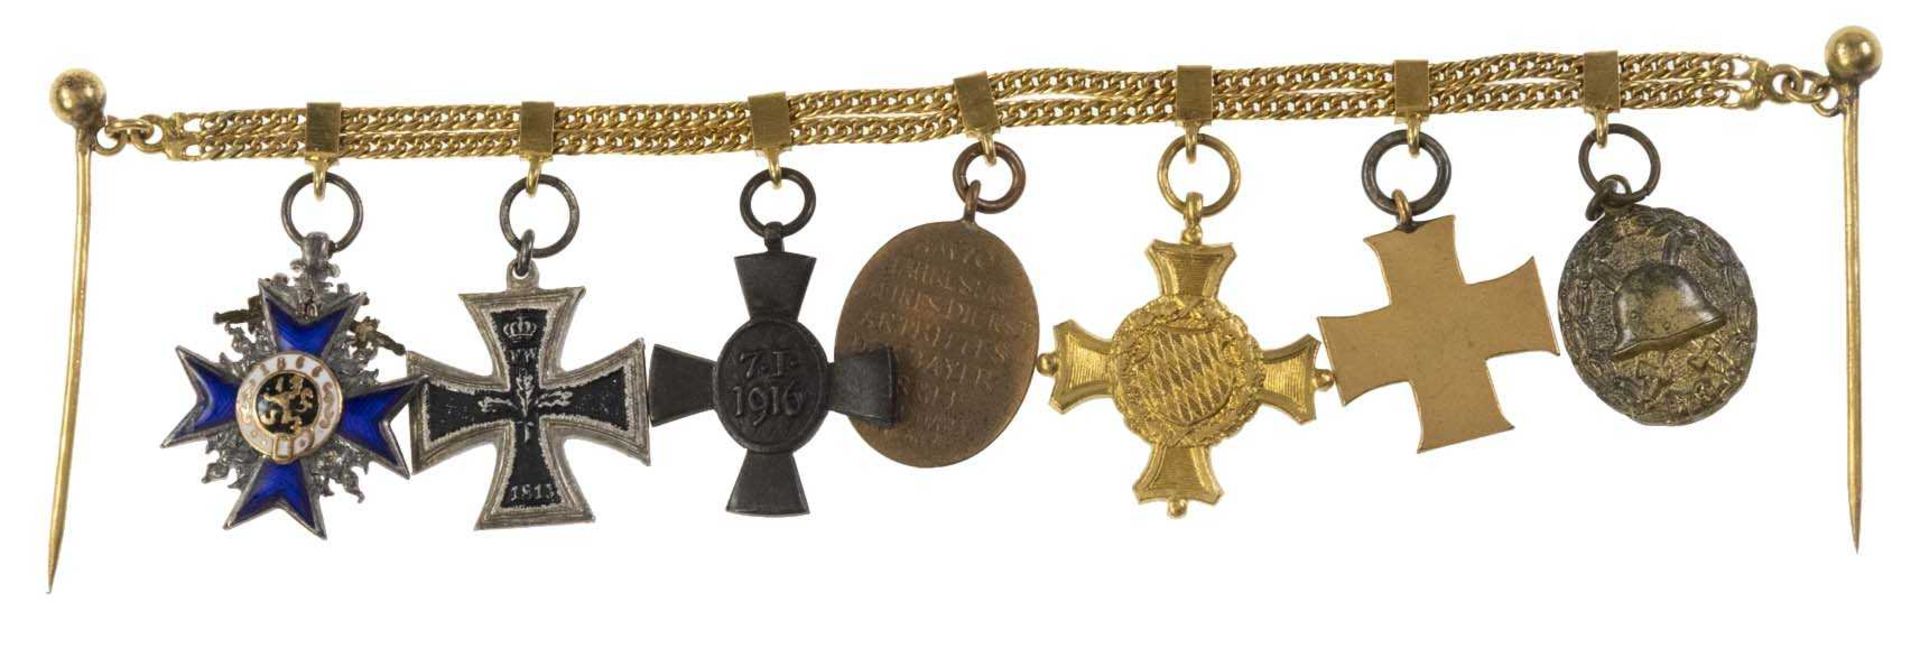 20.710 g. siebenteilige Miniatur mit EK II, herrliche Juweliersarbeit an goldfarbenem Kettchen mit P